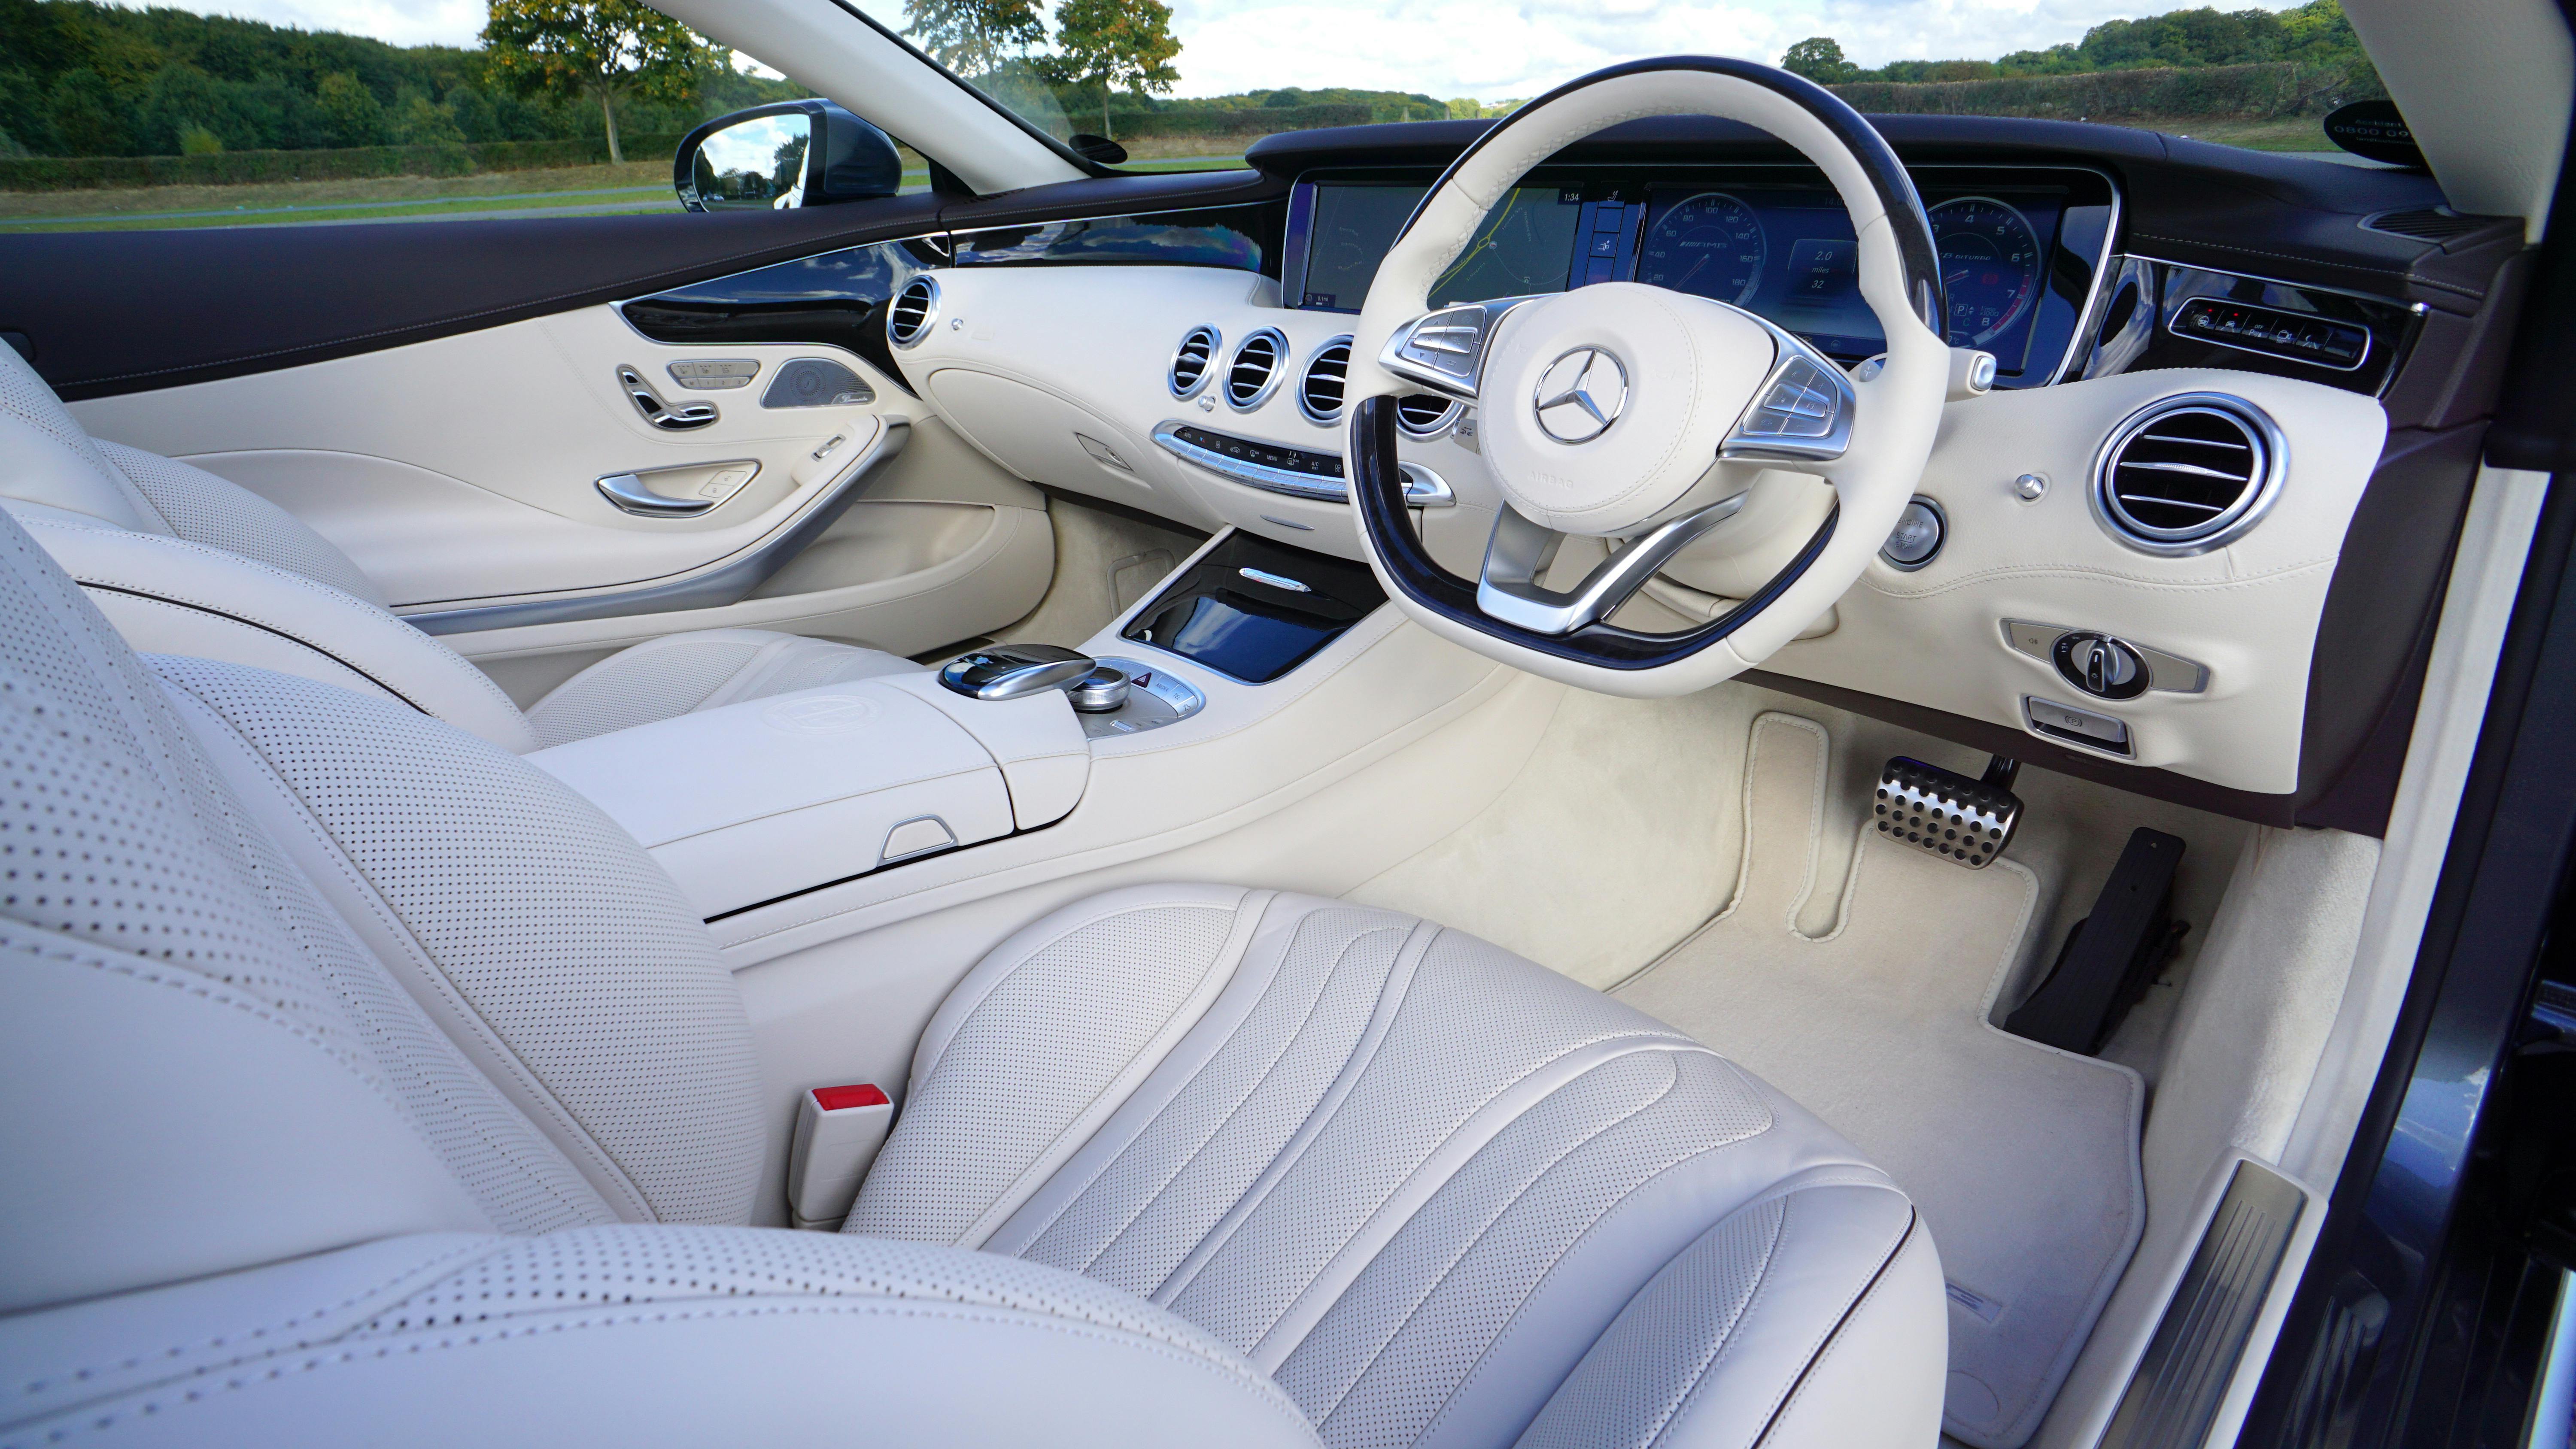 White Mercedes Benz Interior Design · Free Stock Photo